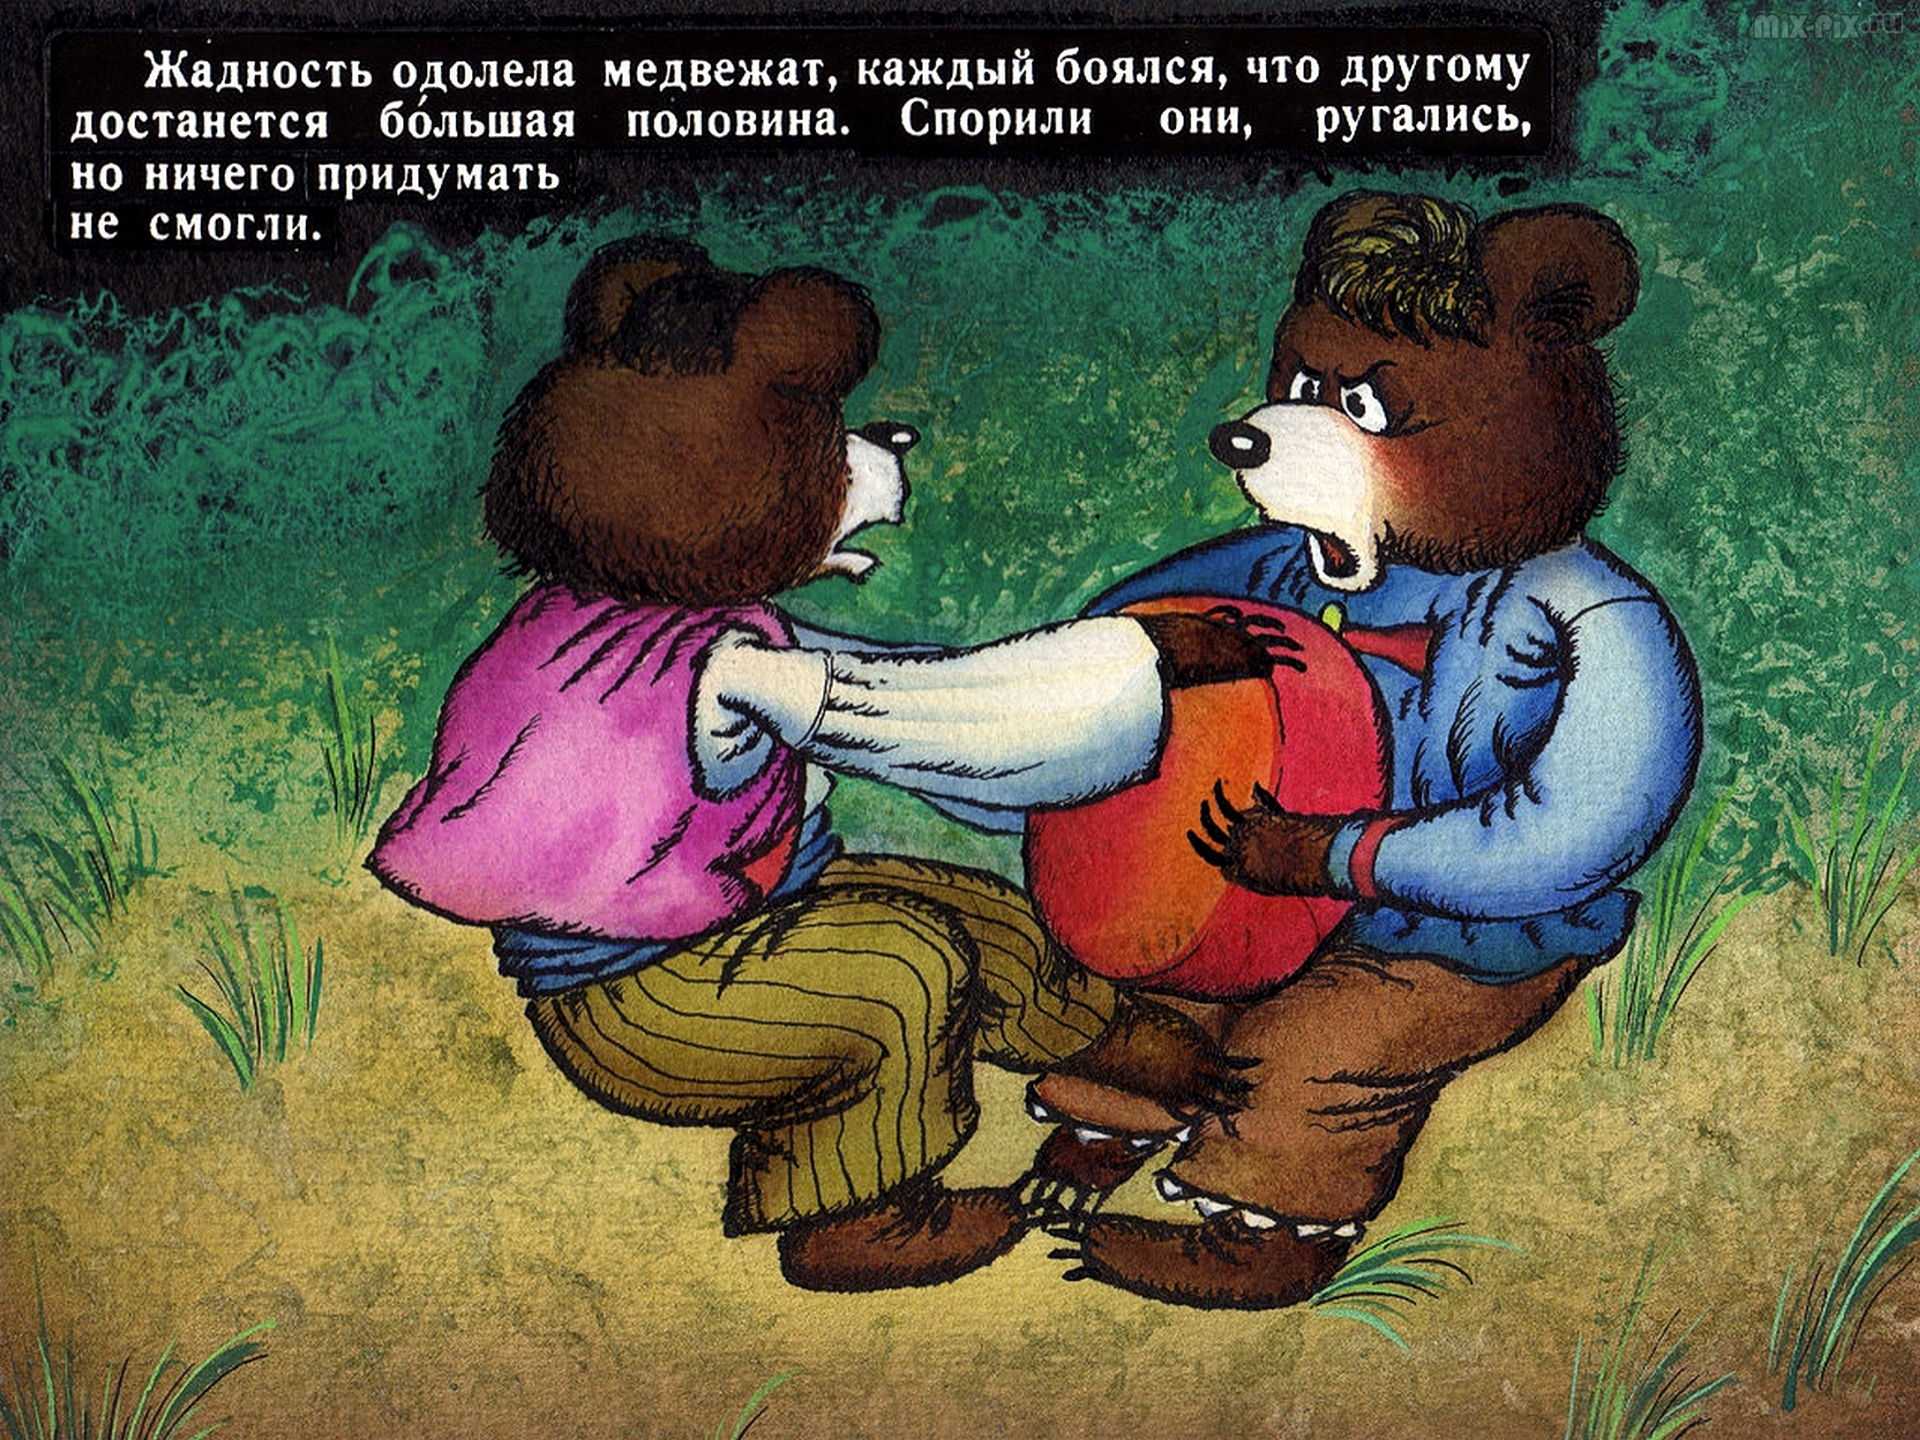 Слушать сказки медведя